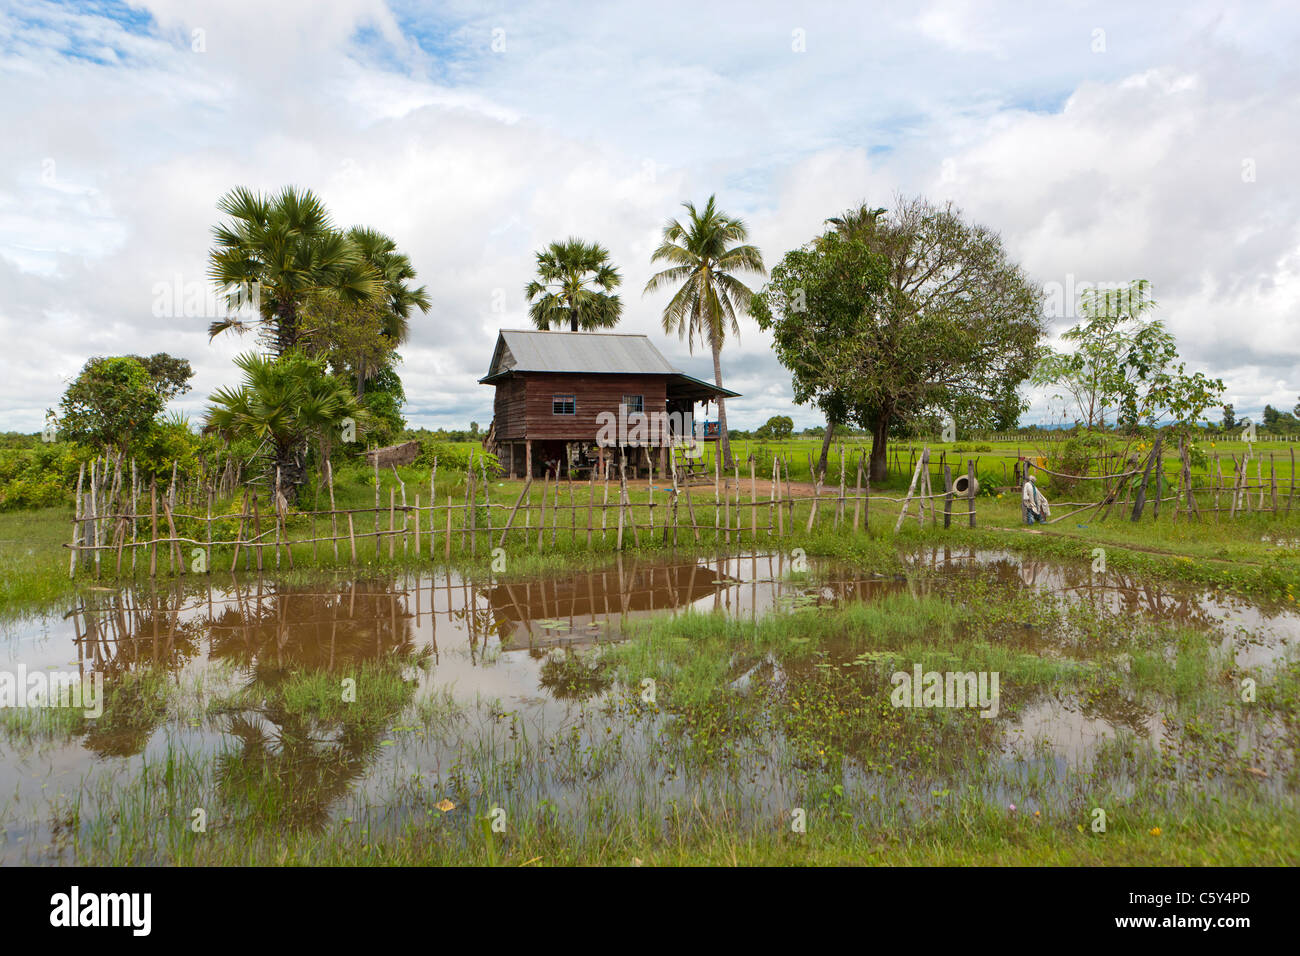 Cabane en bois dans un champ de riz sous les palmiers, près de Siem Reap, Cambodge, Asie Banque D'Images